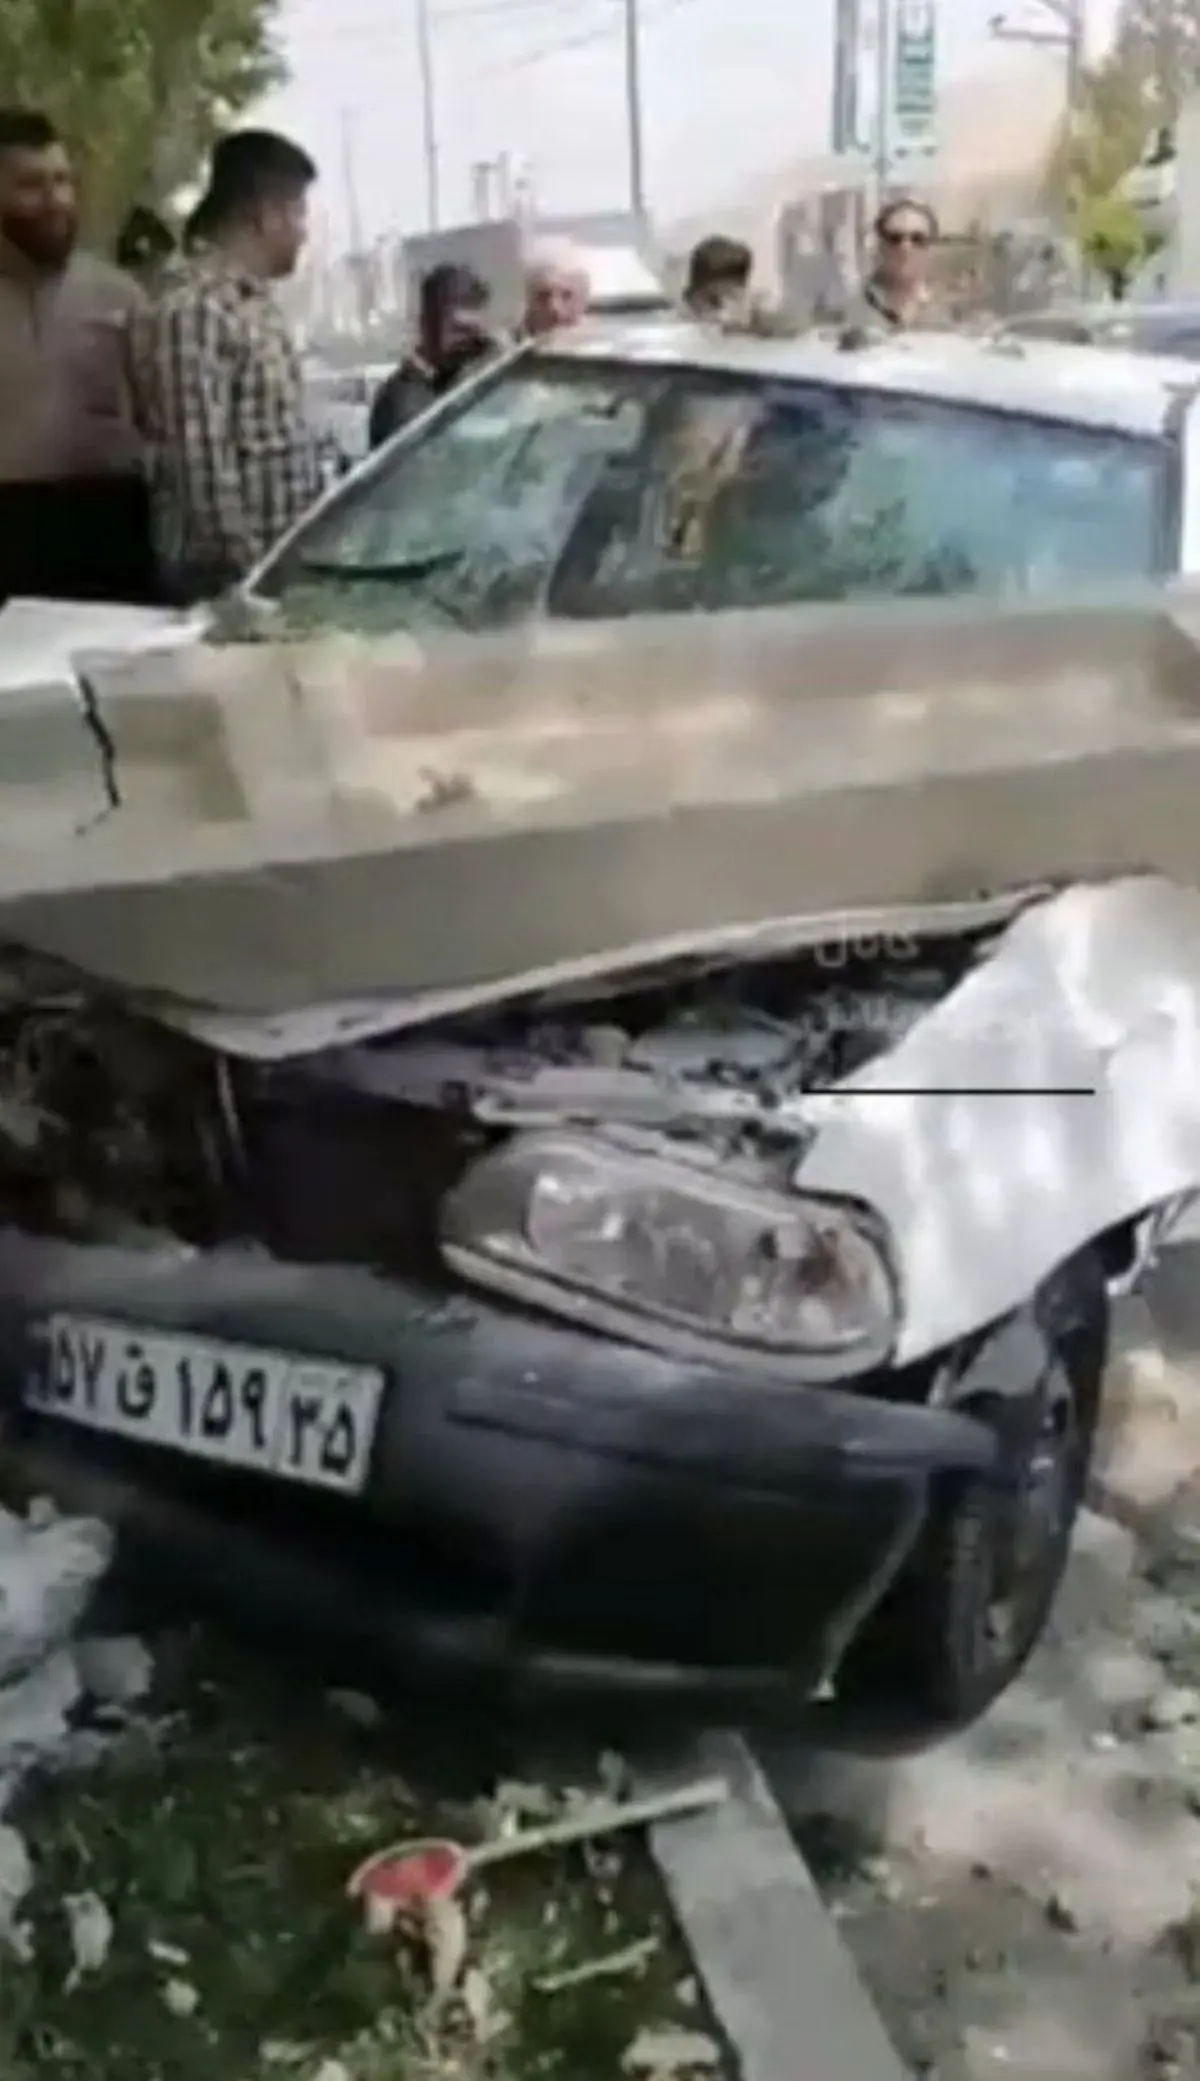 تصادف وحشتناک پراید با تیر برق در شهرستان بوکان+ویدئو 